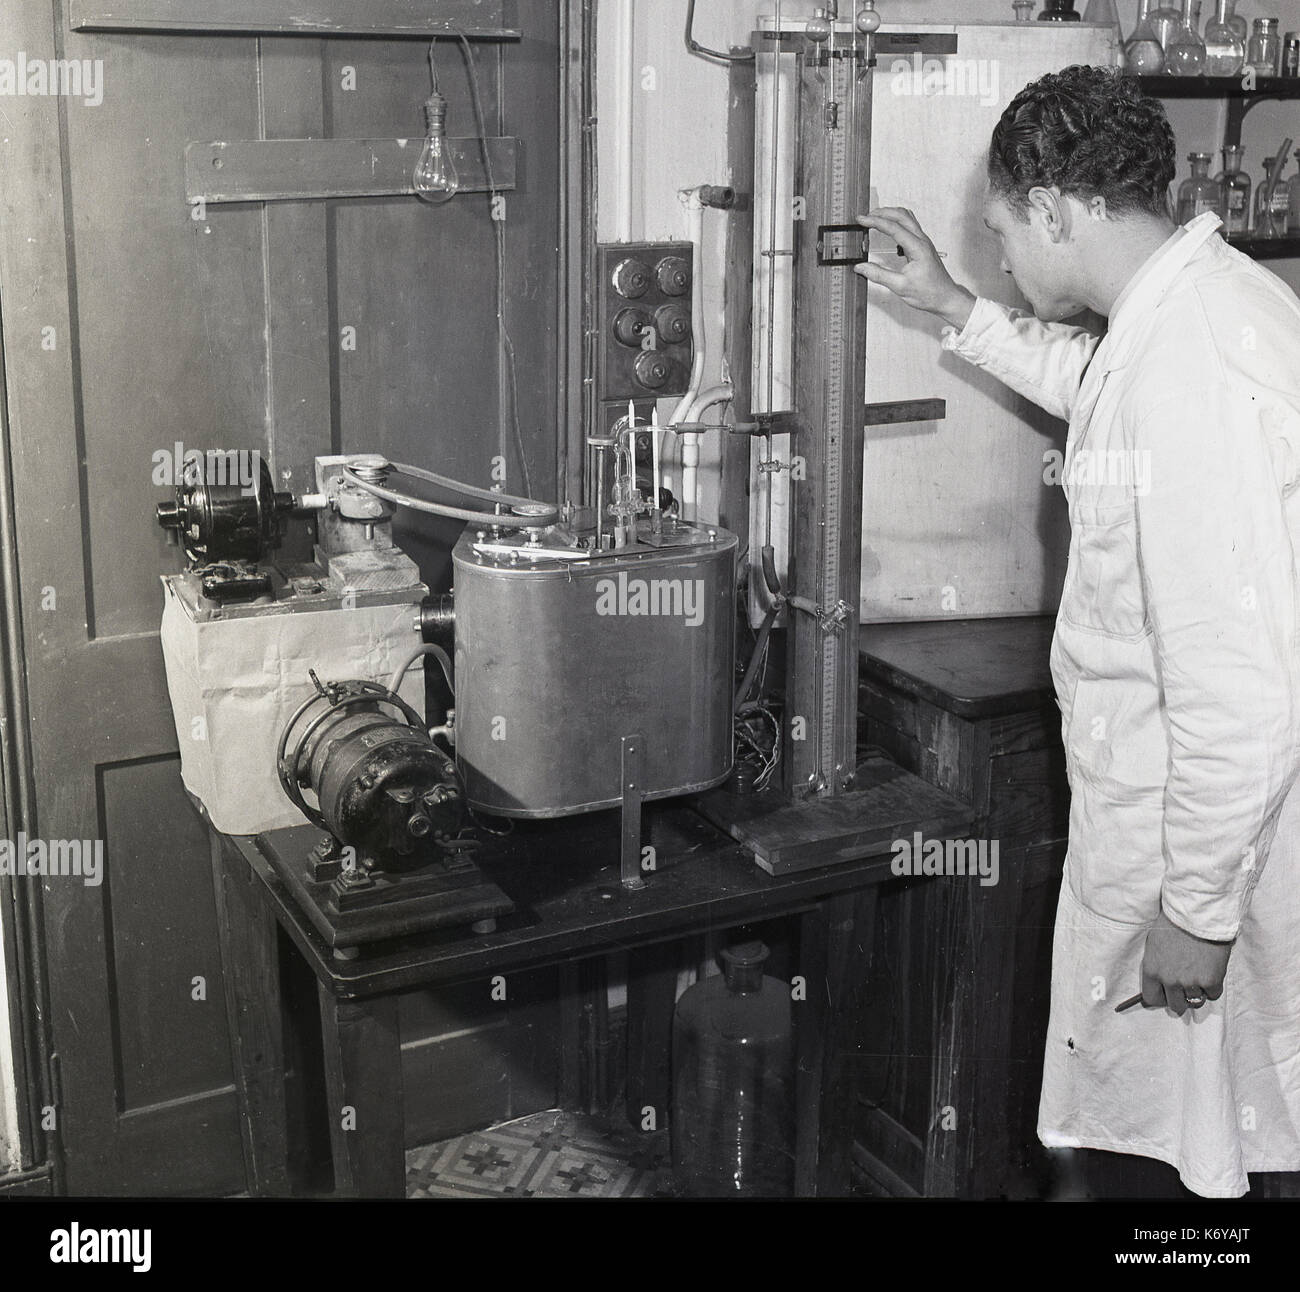 Primi anni cinquanta, food research, foto storiche che mostra uno scienziato usando una apparecchiatura del tempo per studiare le proprietà reologiche del cioccolato. Foto Stock